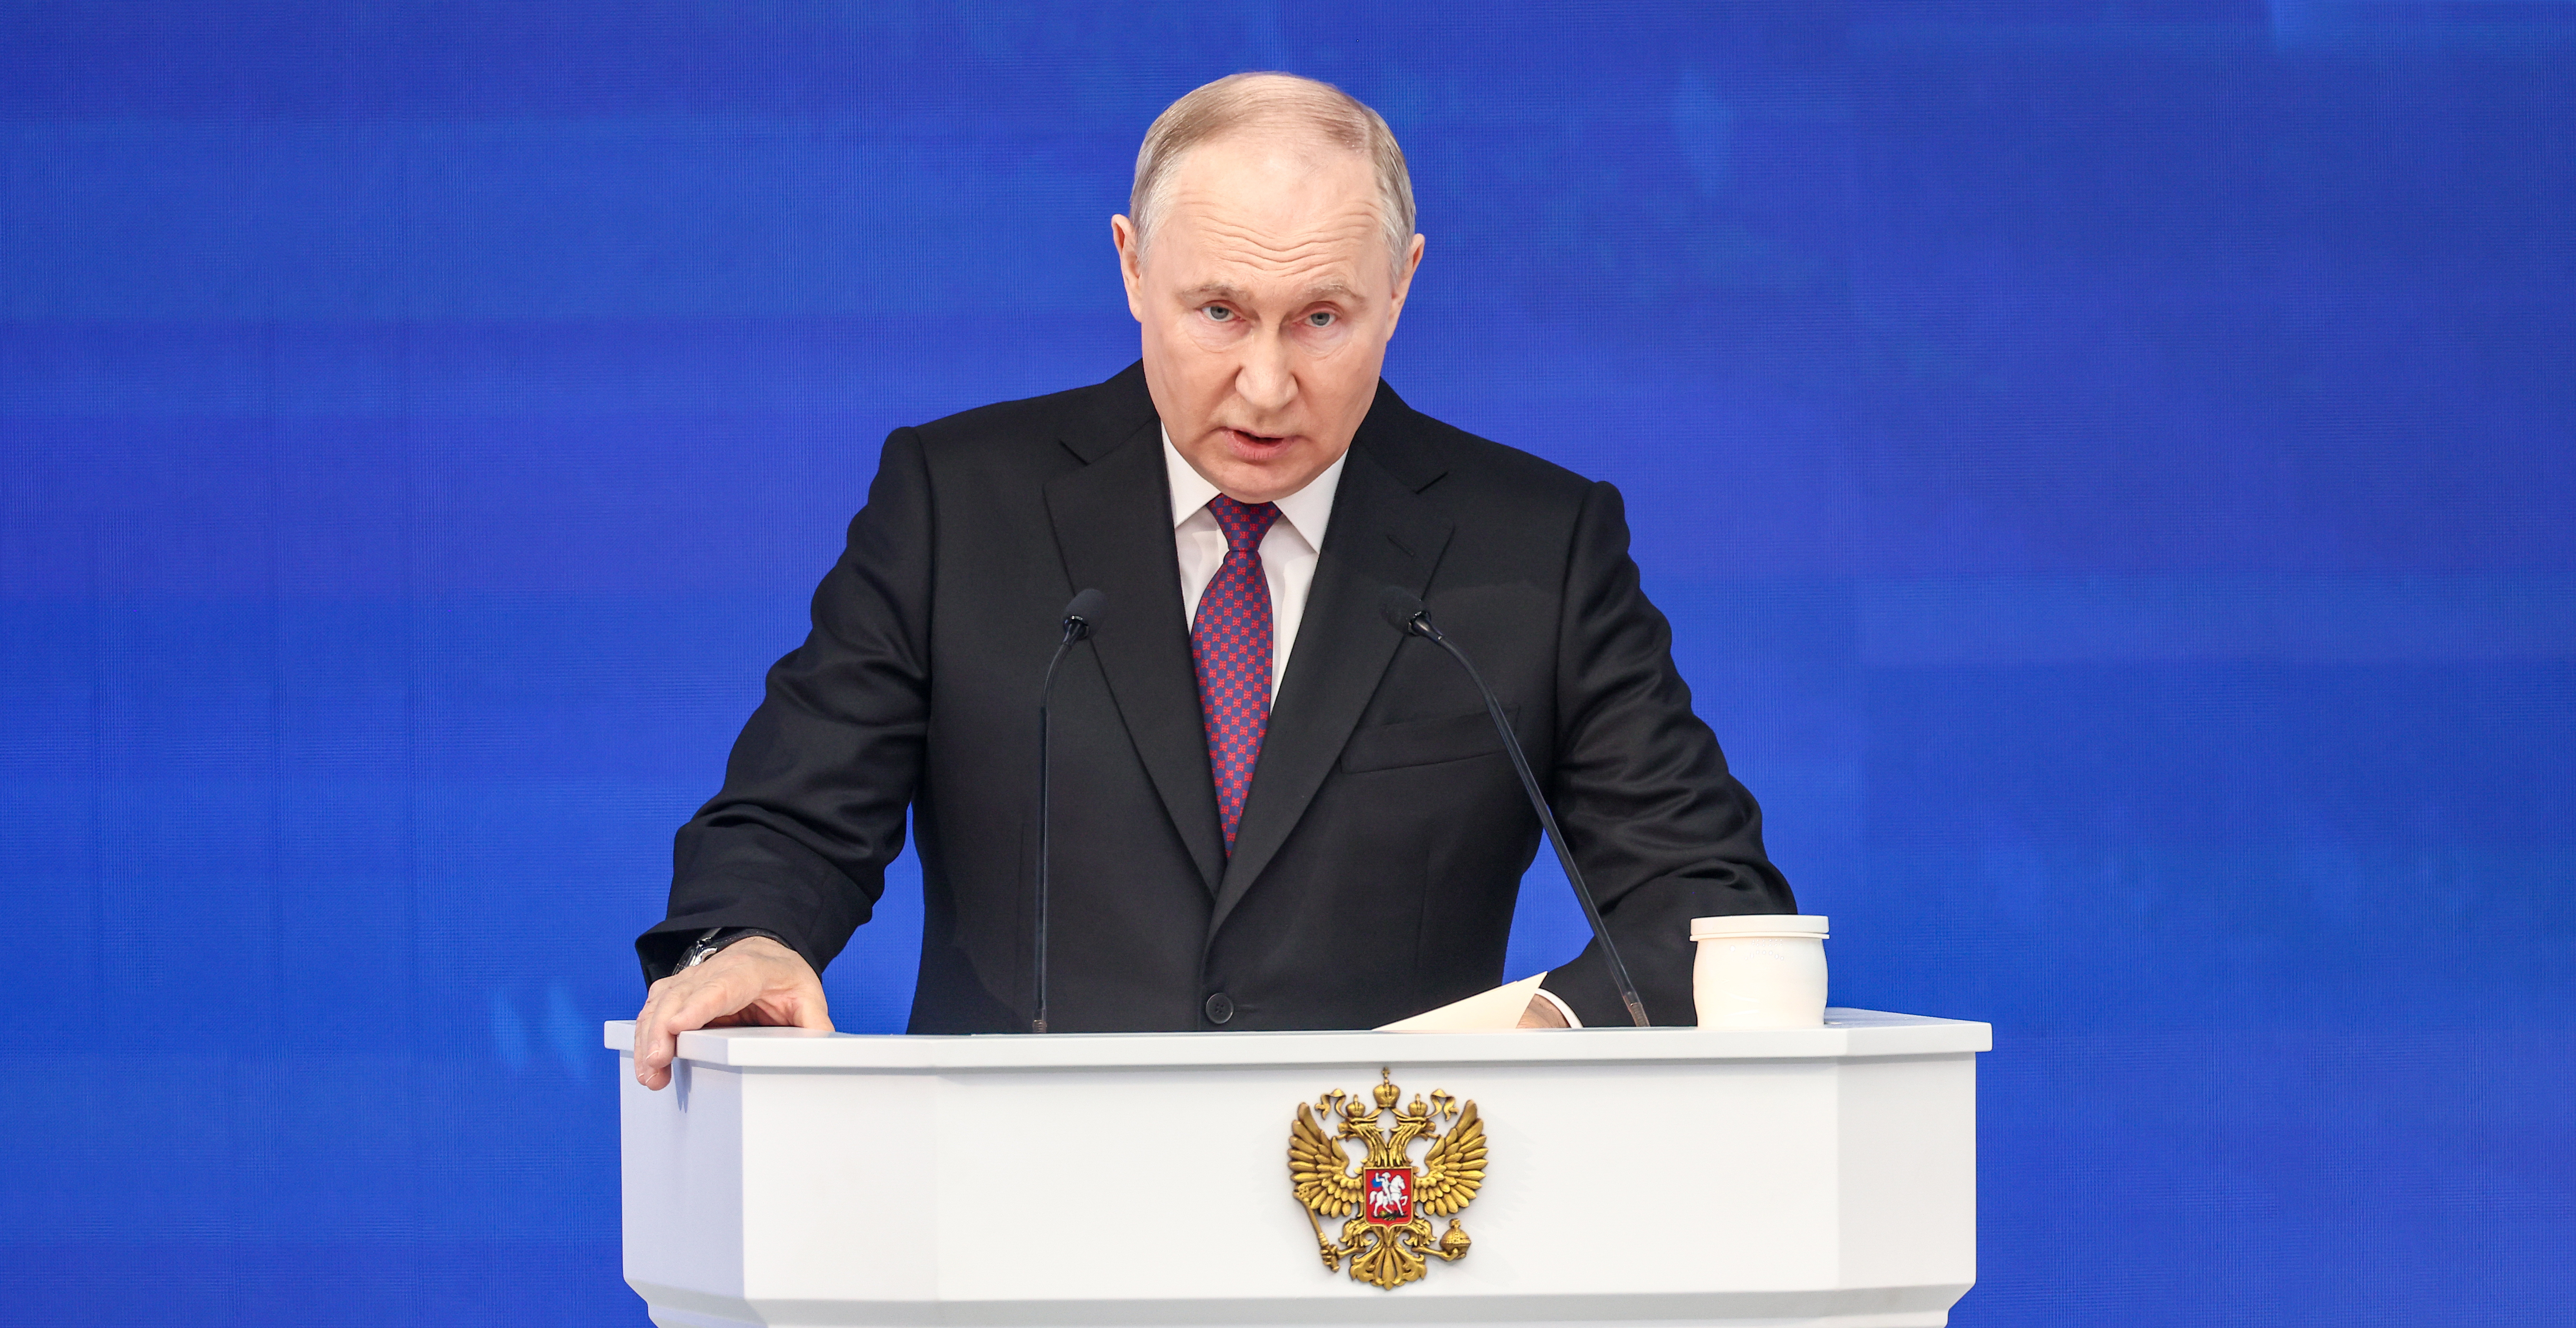 Политолог Асафов: Возможны кадровые изменения после инаугурации Путина